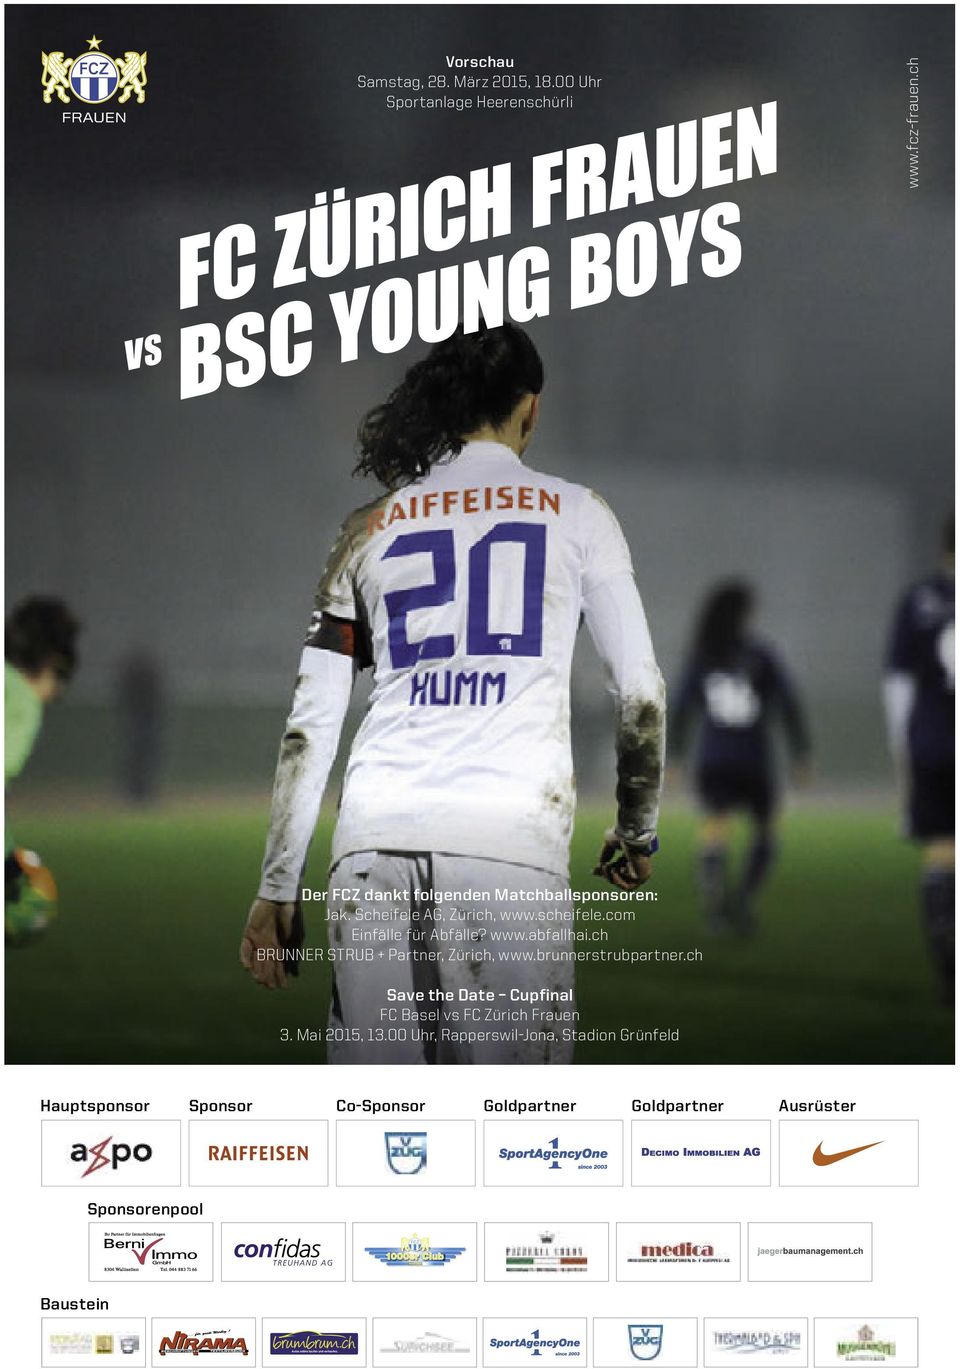 ch BRUNNER STRUB + Partner, Zürich, www.brunnerstrubpartner.ch Save the Date Cupfinal FC Basel vs FC Zürich Frauen 3. Mai 2015, 13.